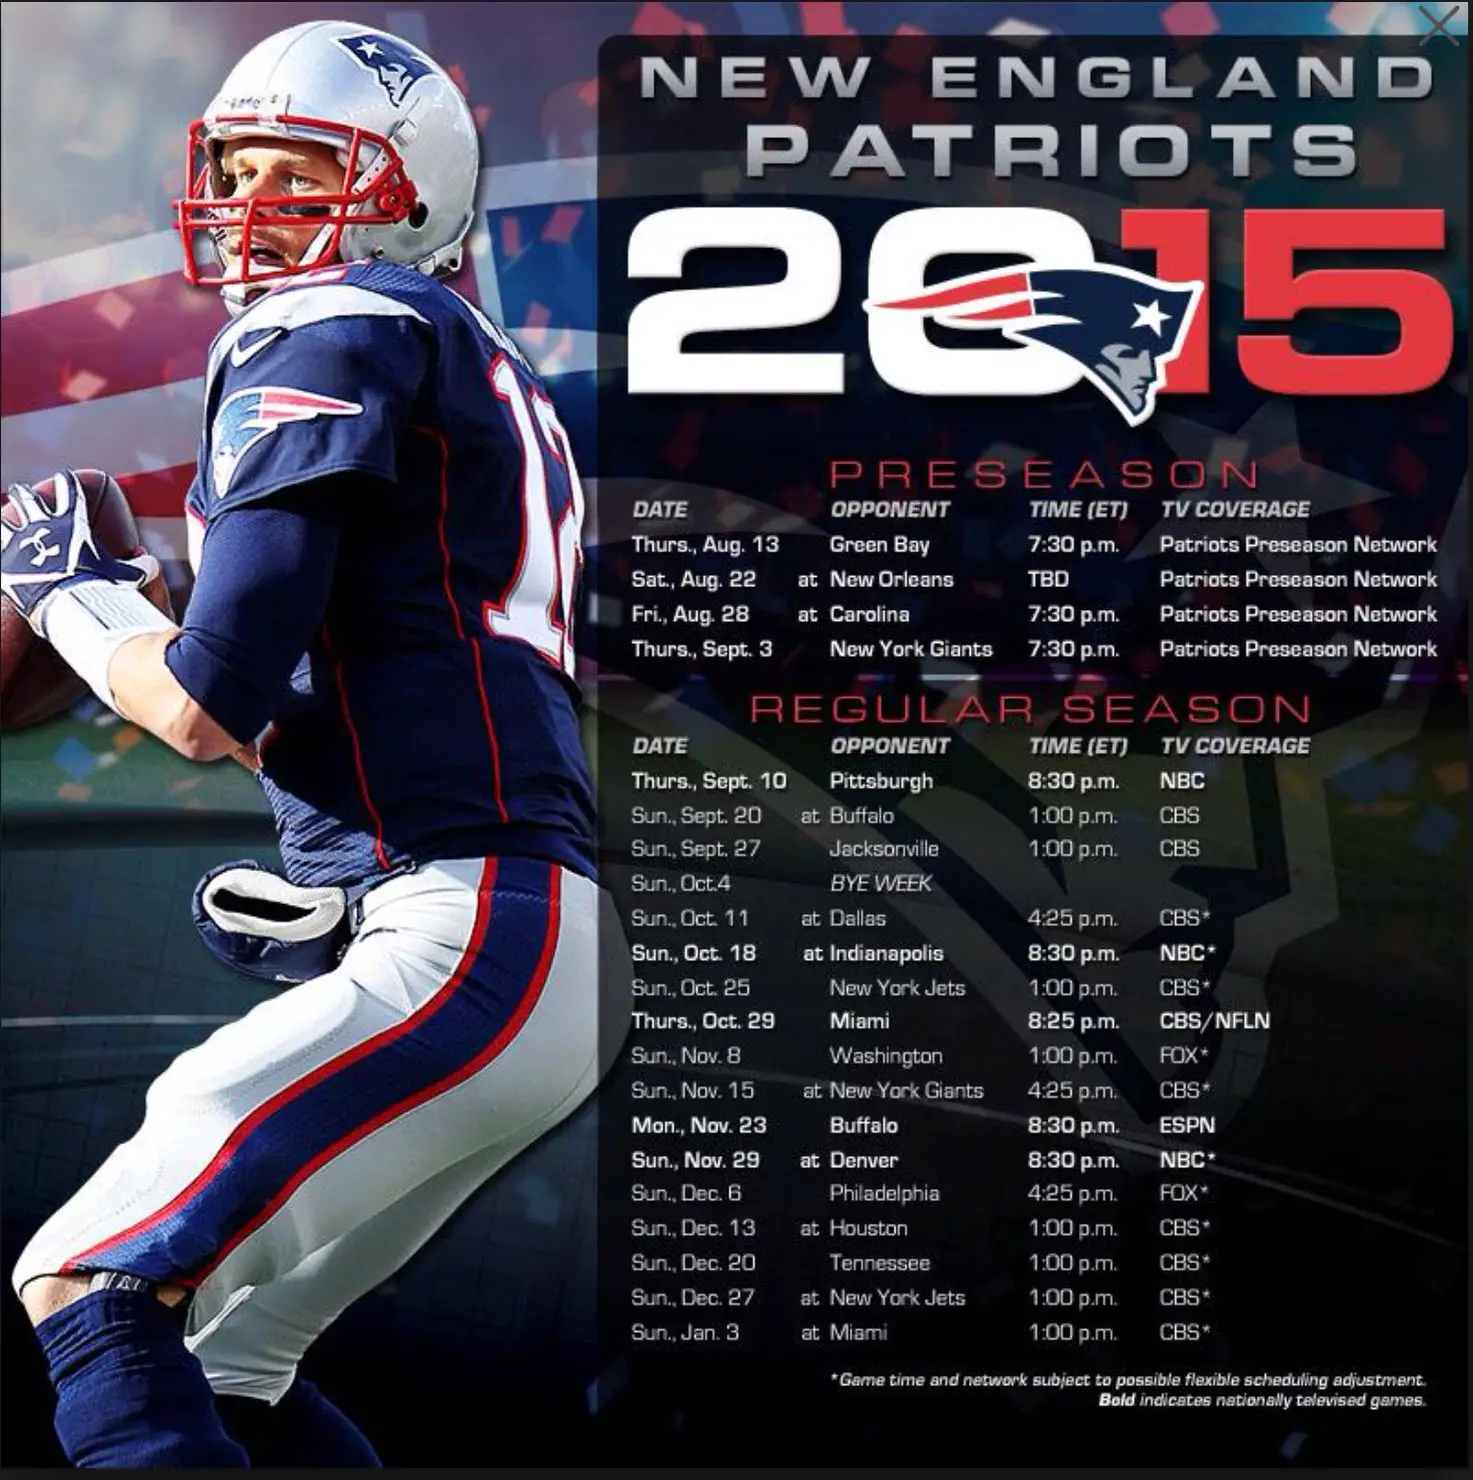 New England Patriots 2015 Season schedule